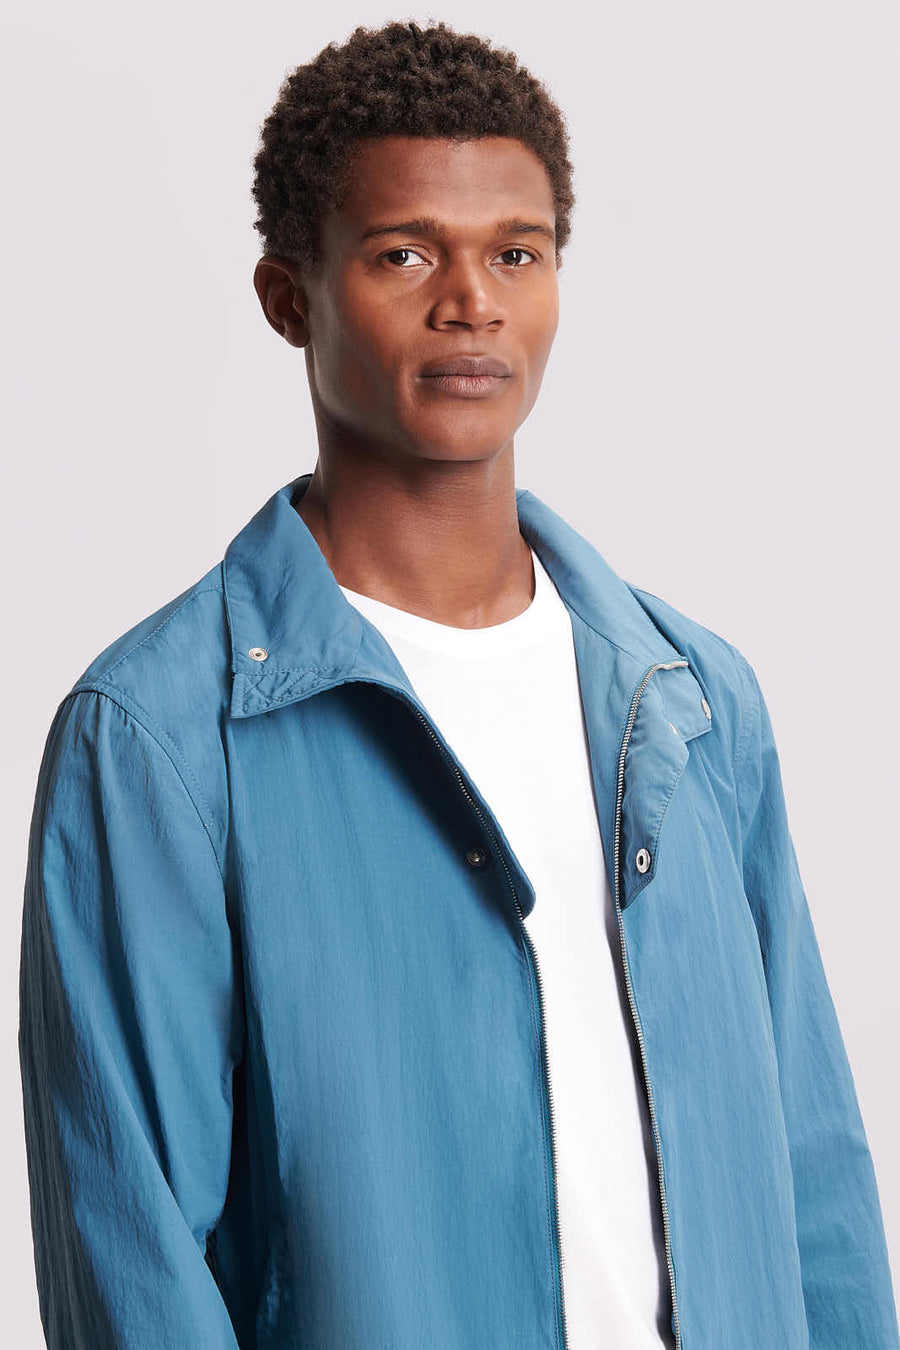 Windbreaker Jacket in Teal Blue